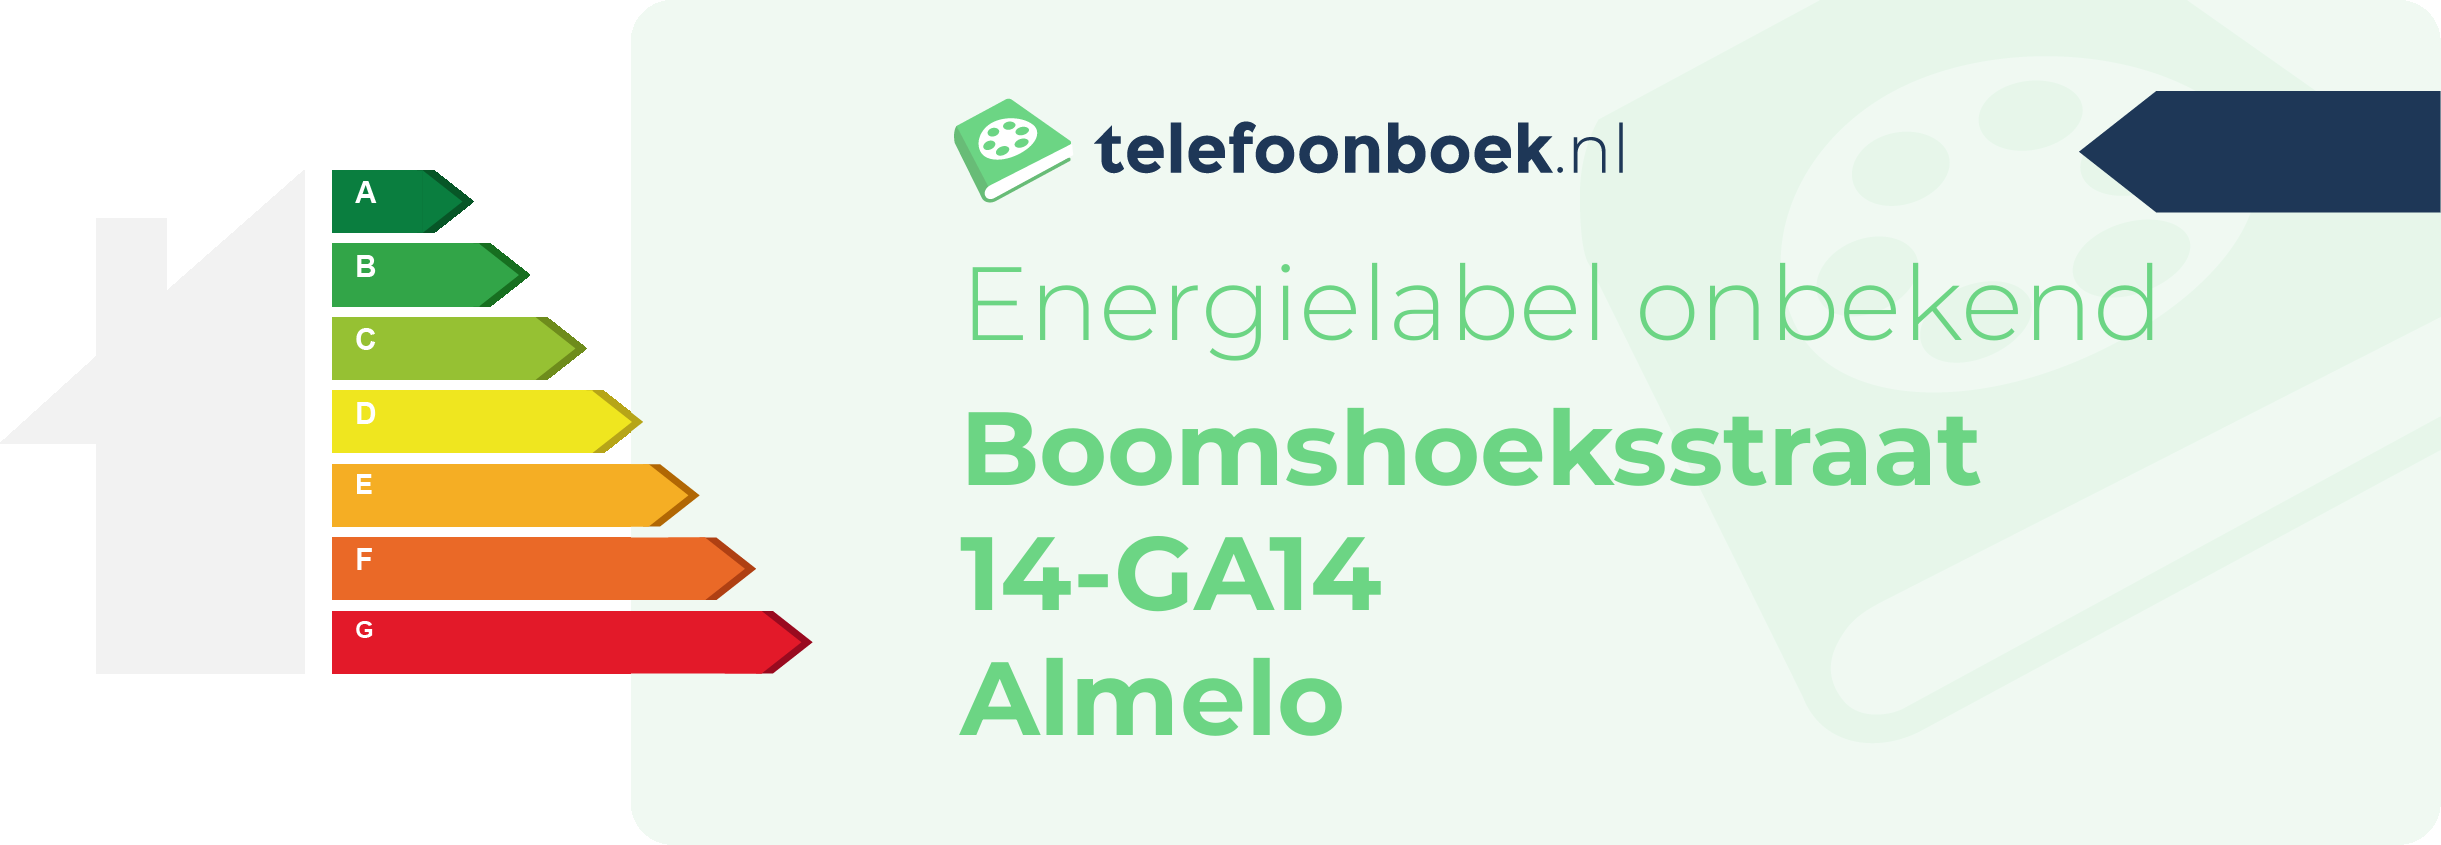 Energielabel Boomshoeksstraat 14-GA14 Almelo